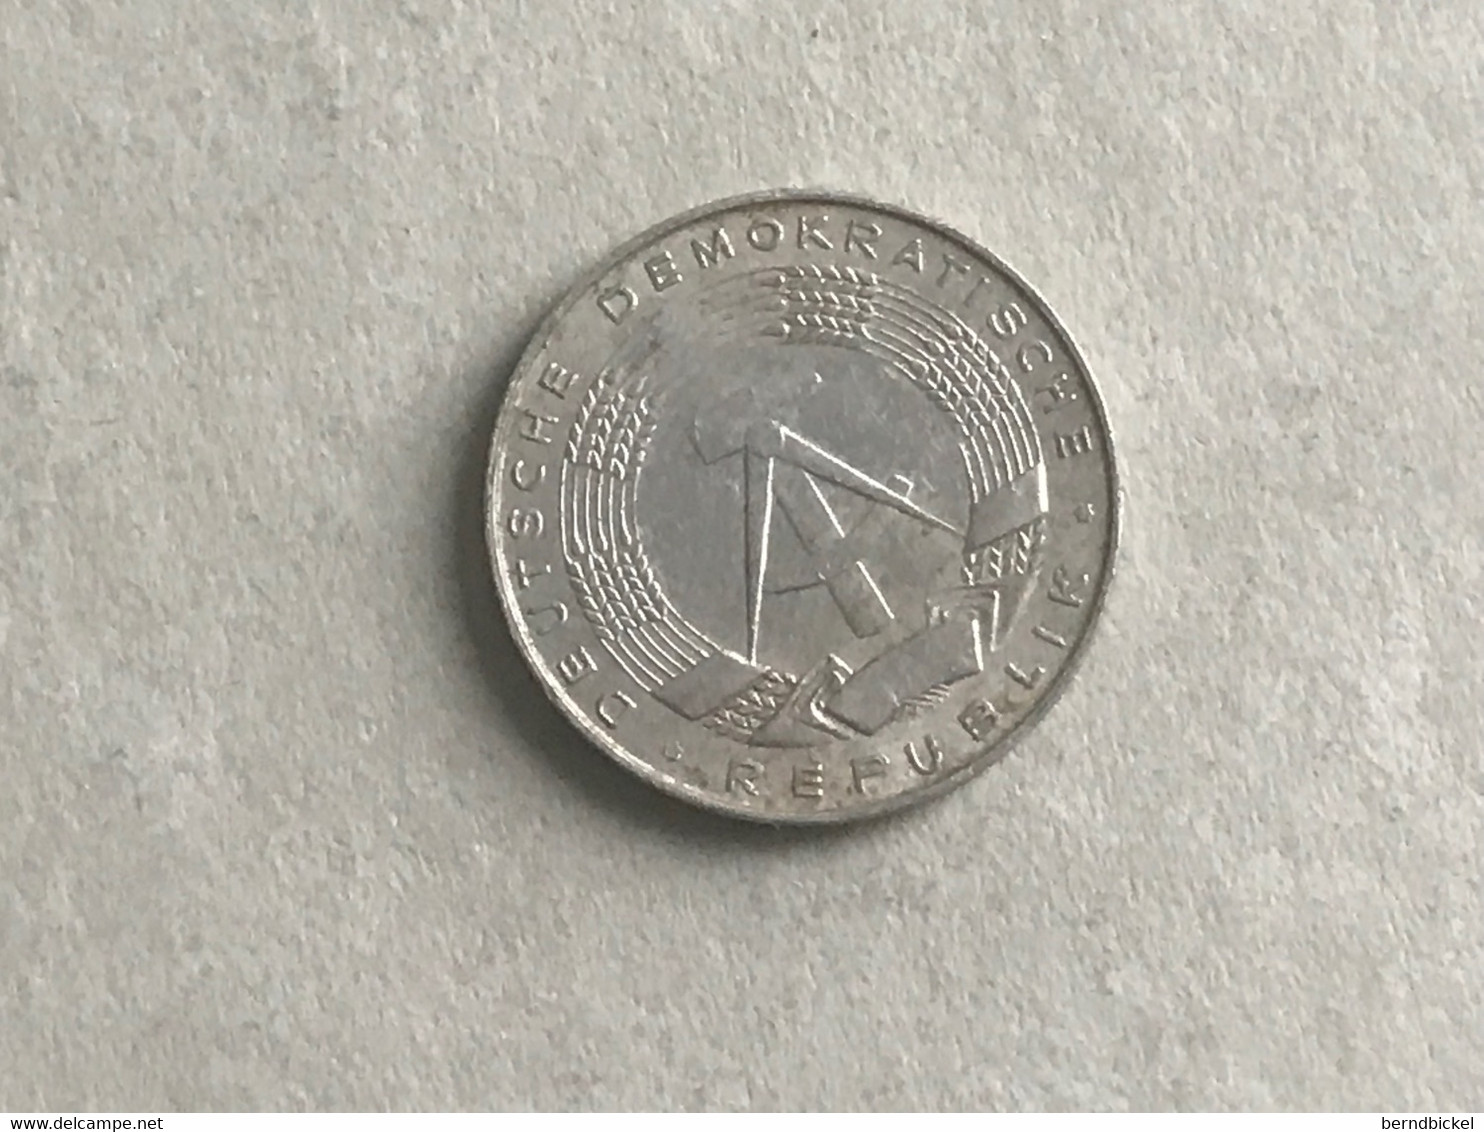 Münze Münzen Umlaufmünze Deutschland DDR 1 Pfennig 1975 - 1 Pfennig